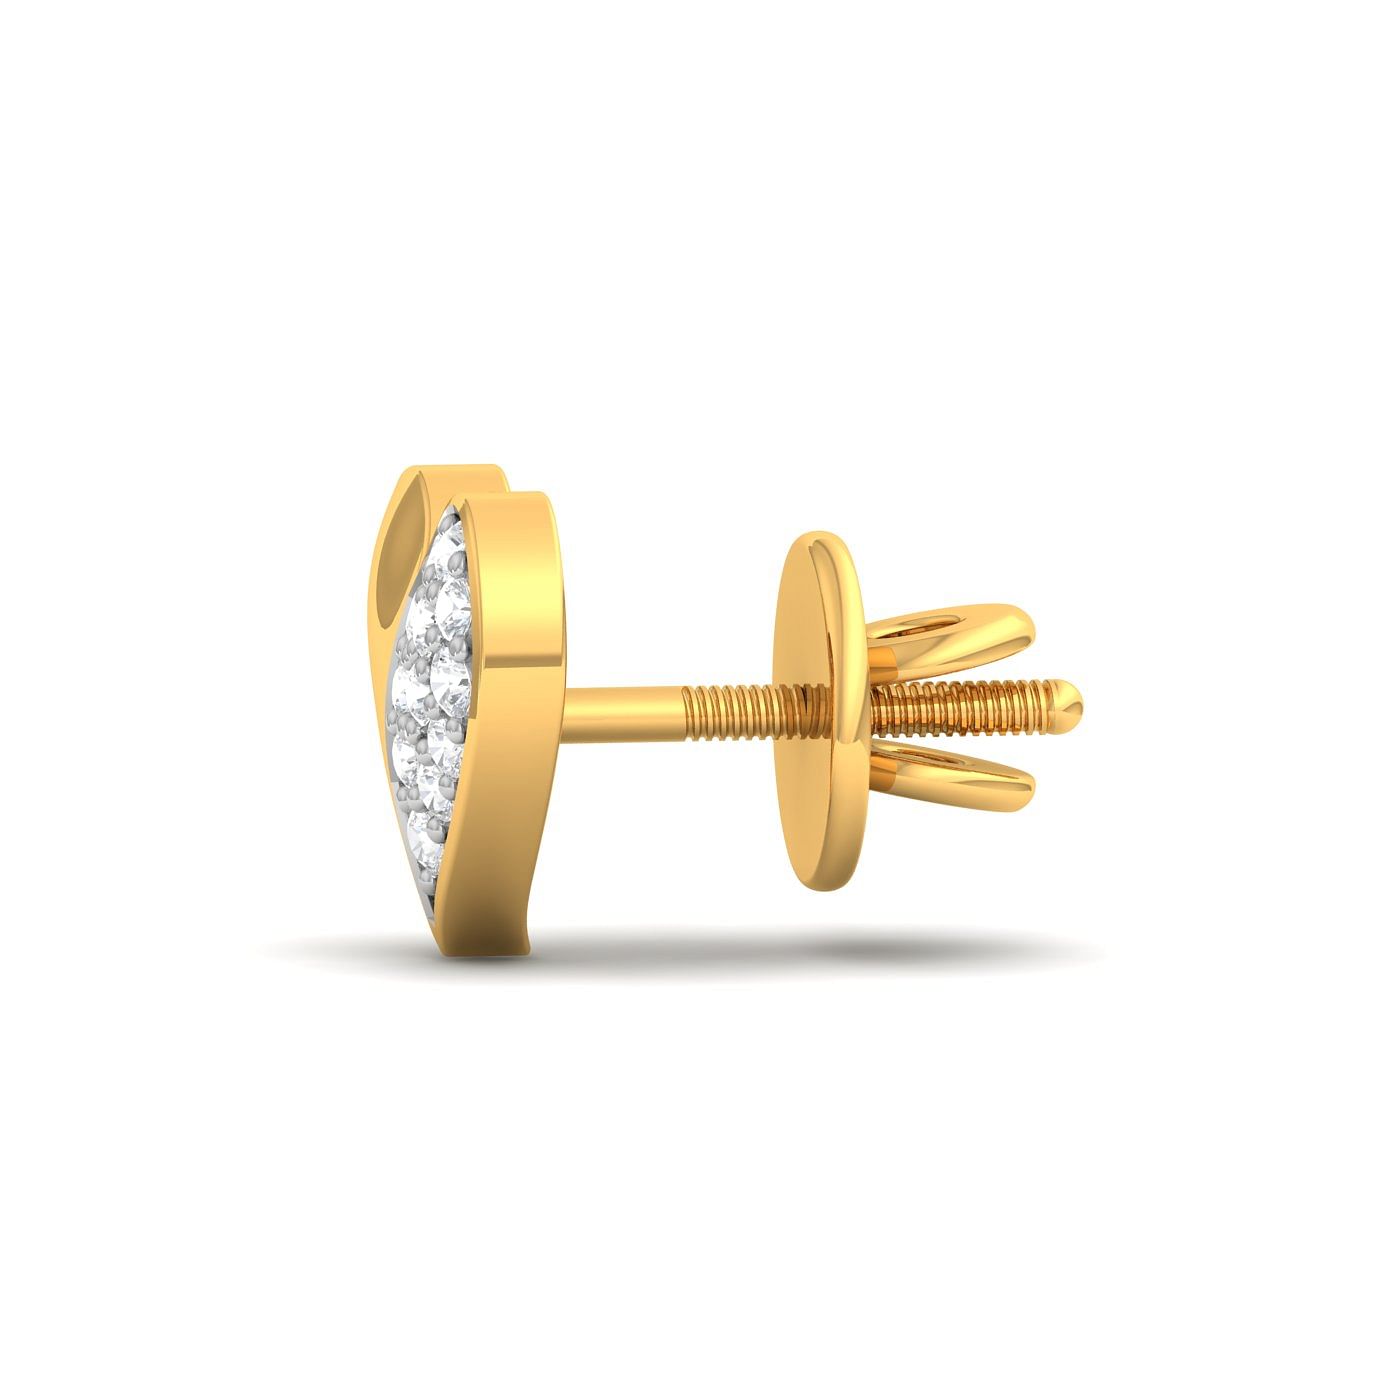 14k Yellow Gold Sparkling Heart Diamond Earrings for women